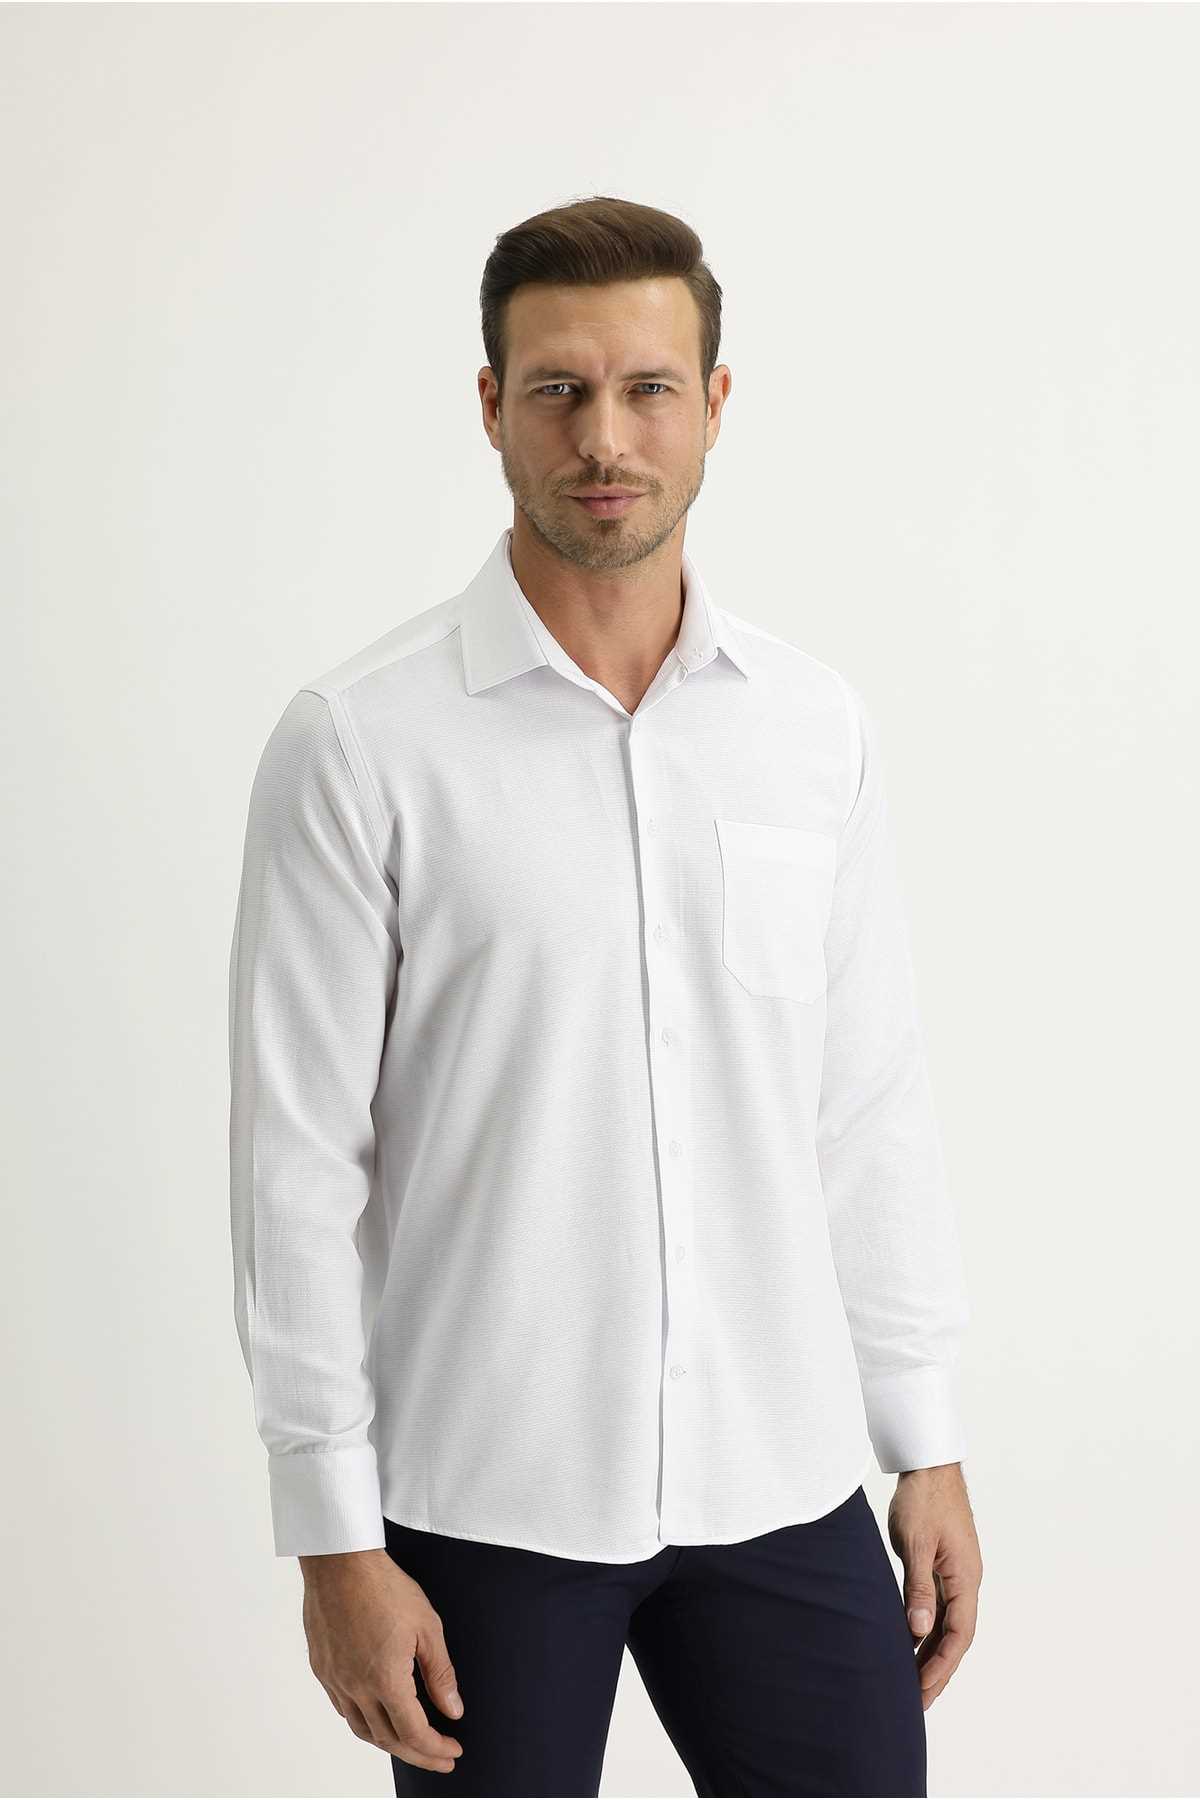 فروش پیراهن مجلسی مردانه اصل برند کیگیلی رنگ سفید ty85584270